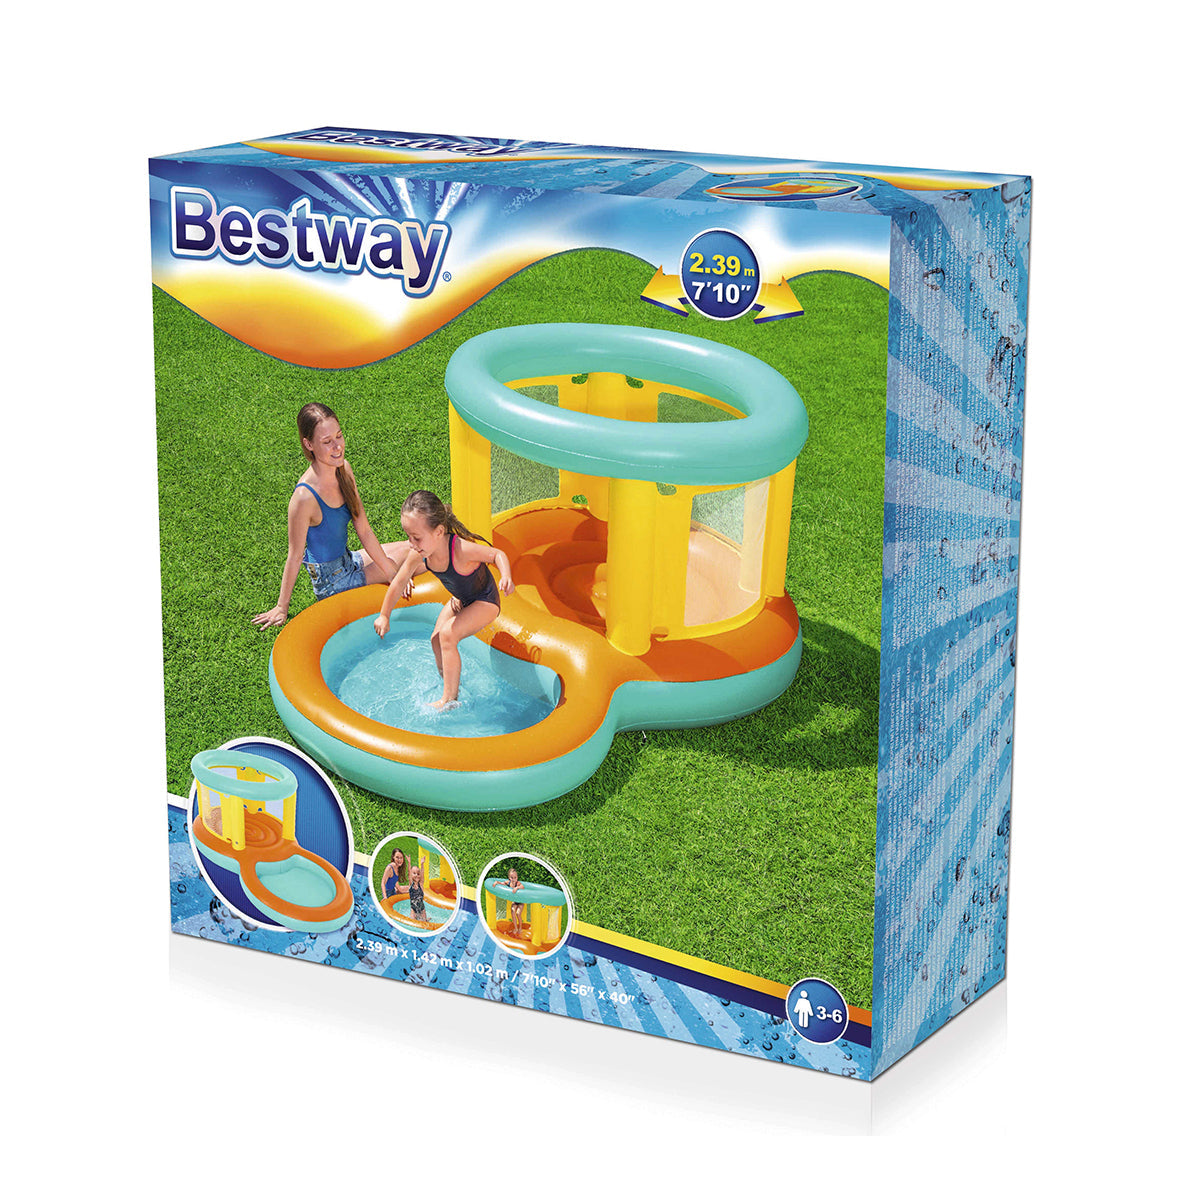 Bestway - Jumptopia Bouncer And Play Pool - 52385